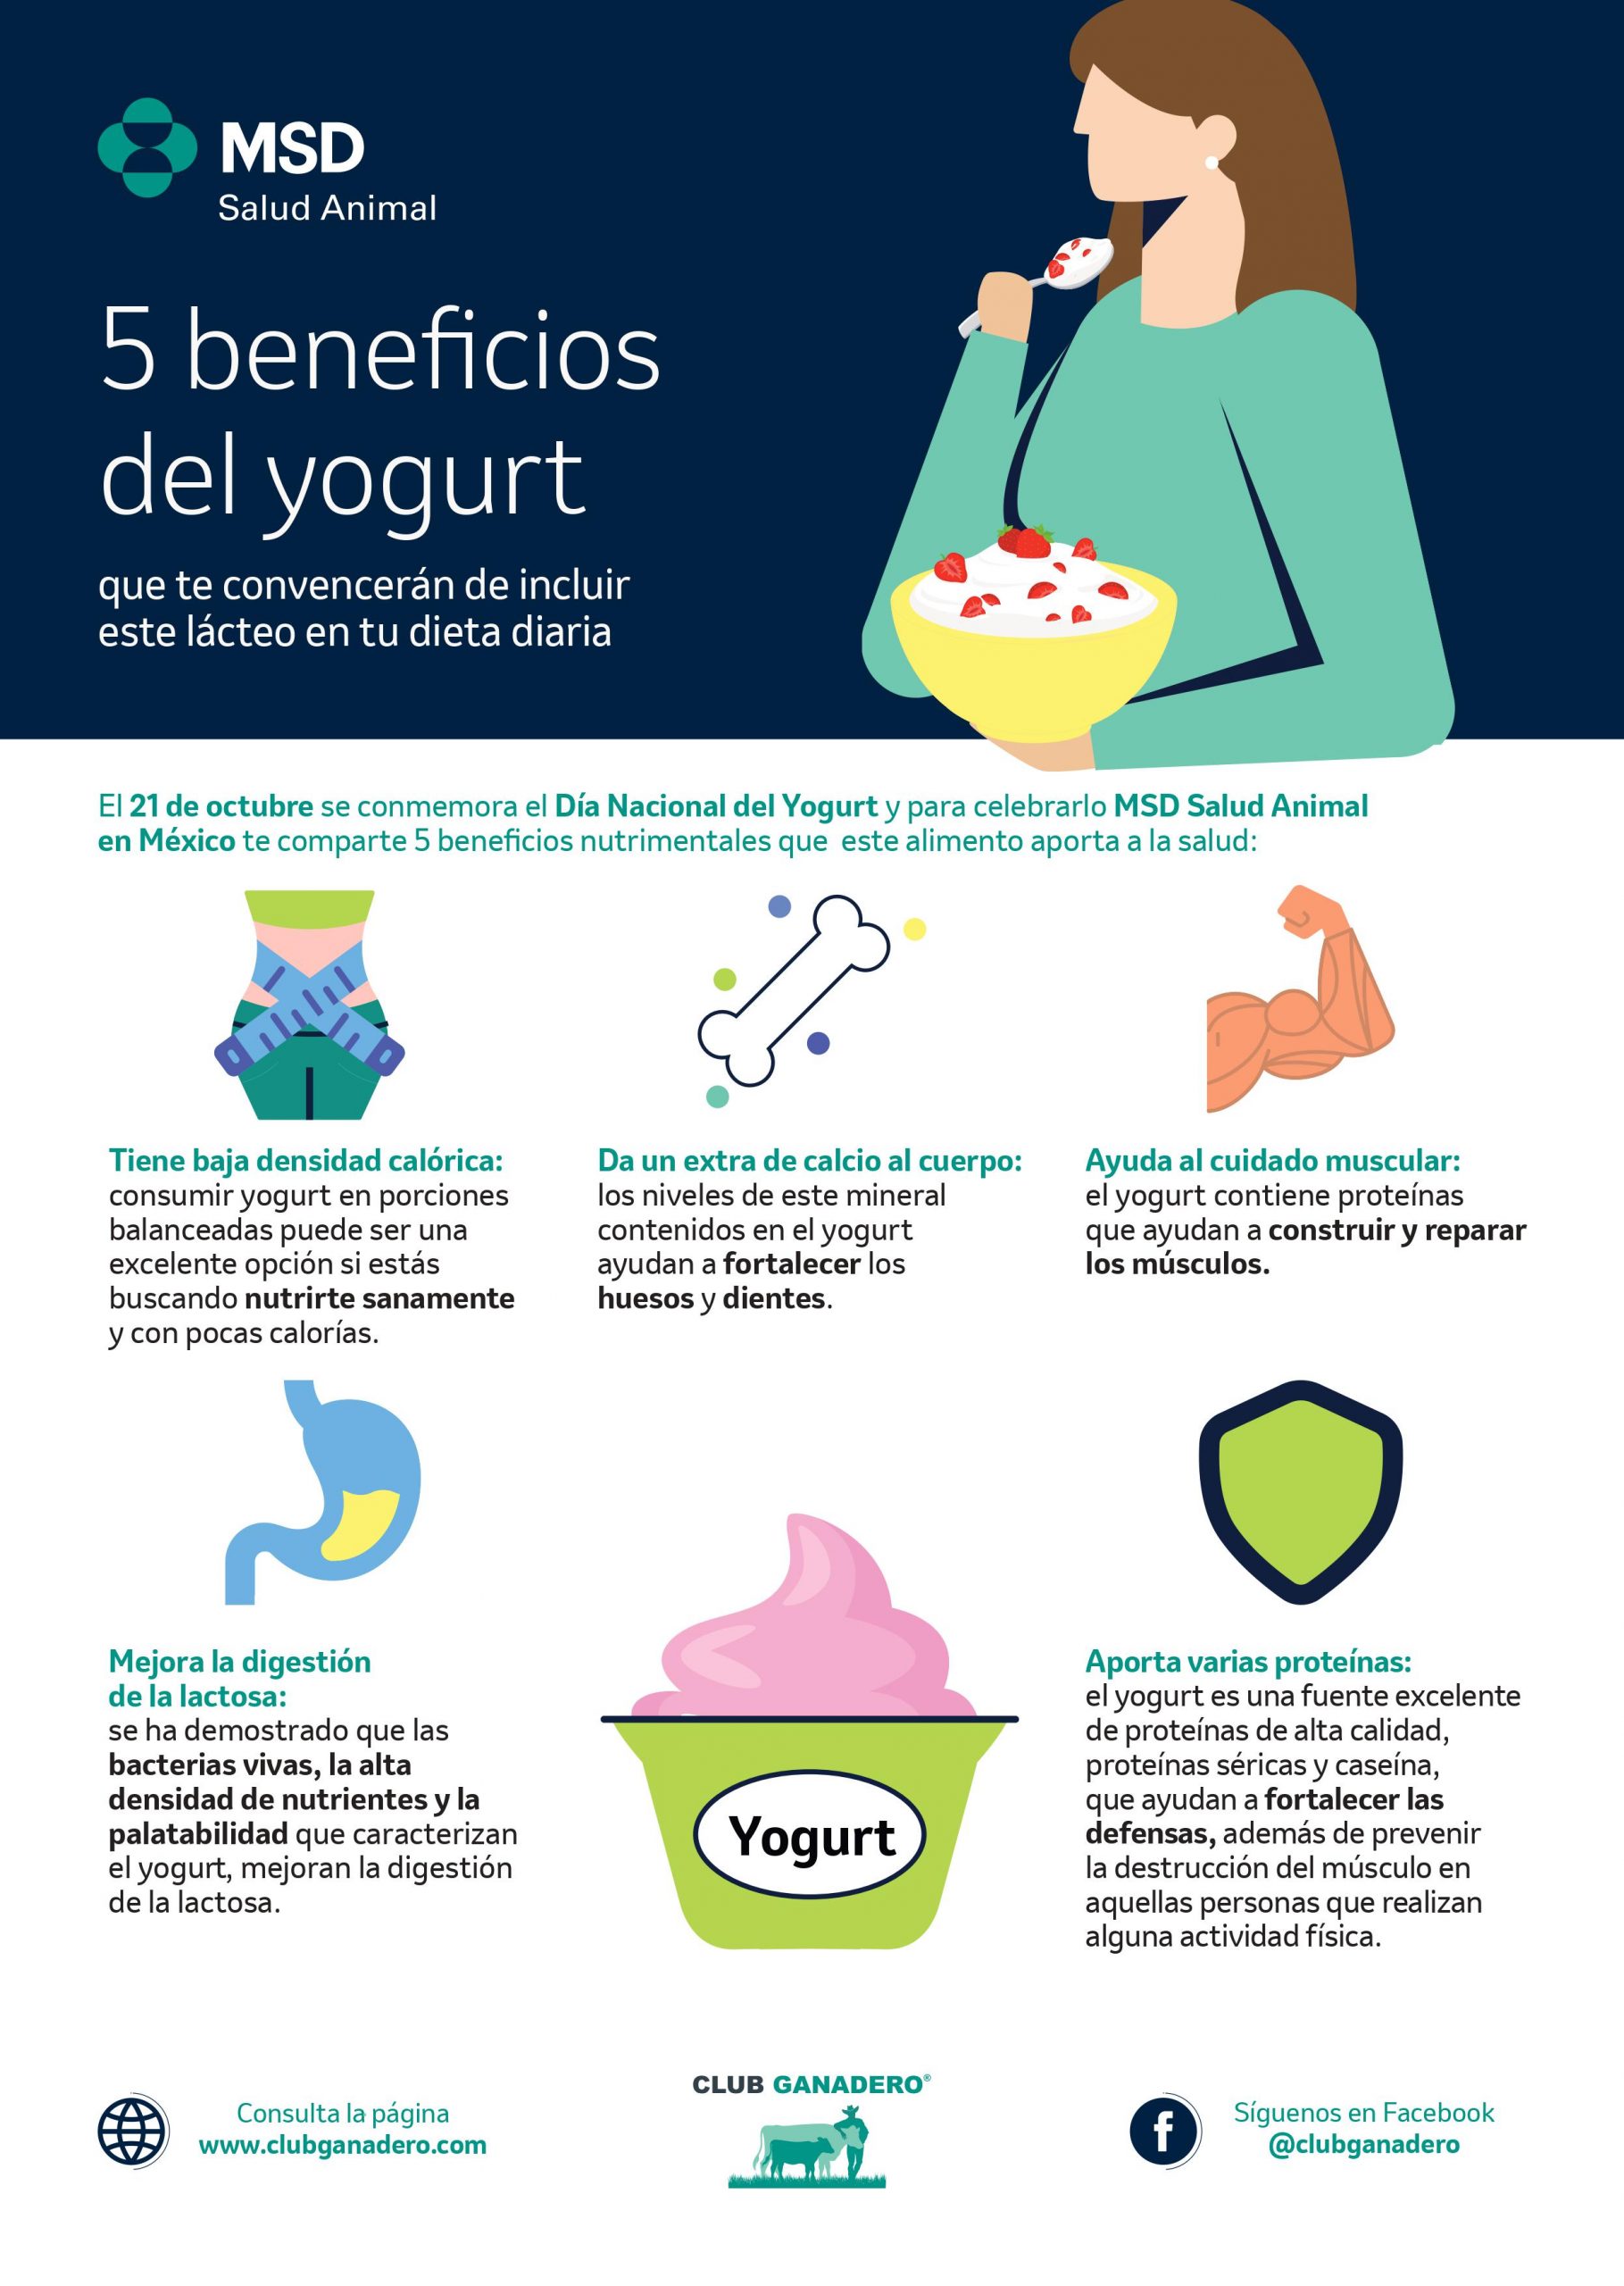 ¿Sabías que el yogurt es un alimento alto en nutrientes? Cinco beneficios que aporta a la salud